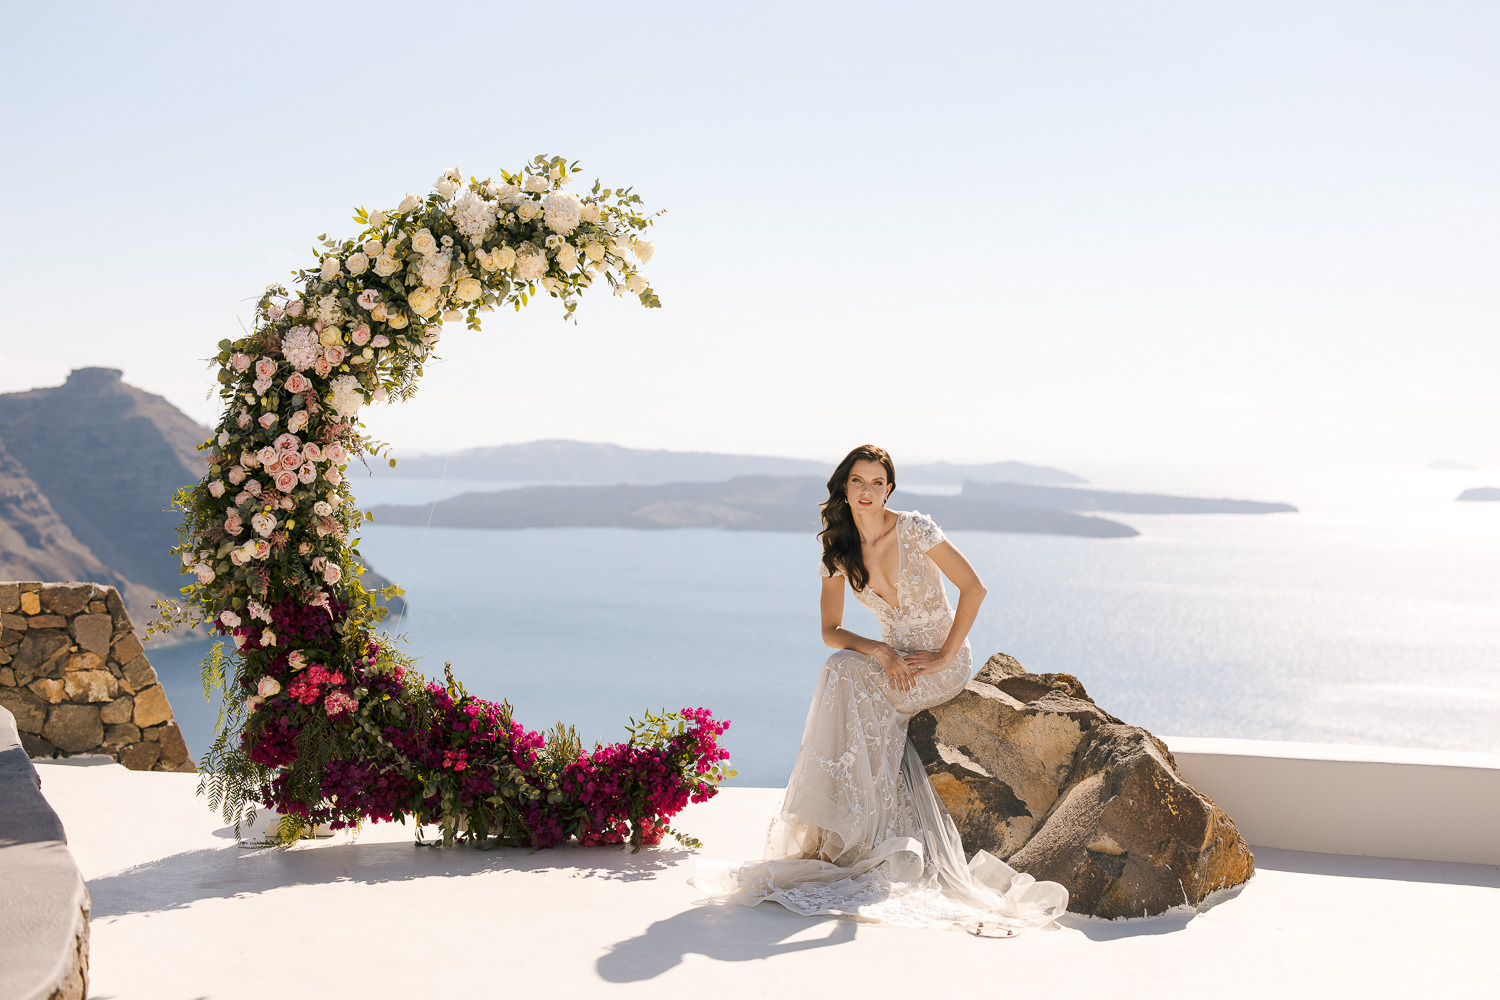 Aenaon villas Santorini wedding moon ceremony backdrop